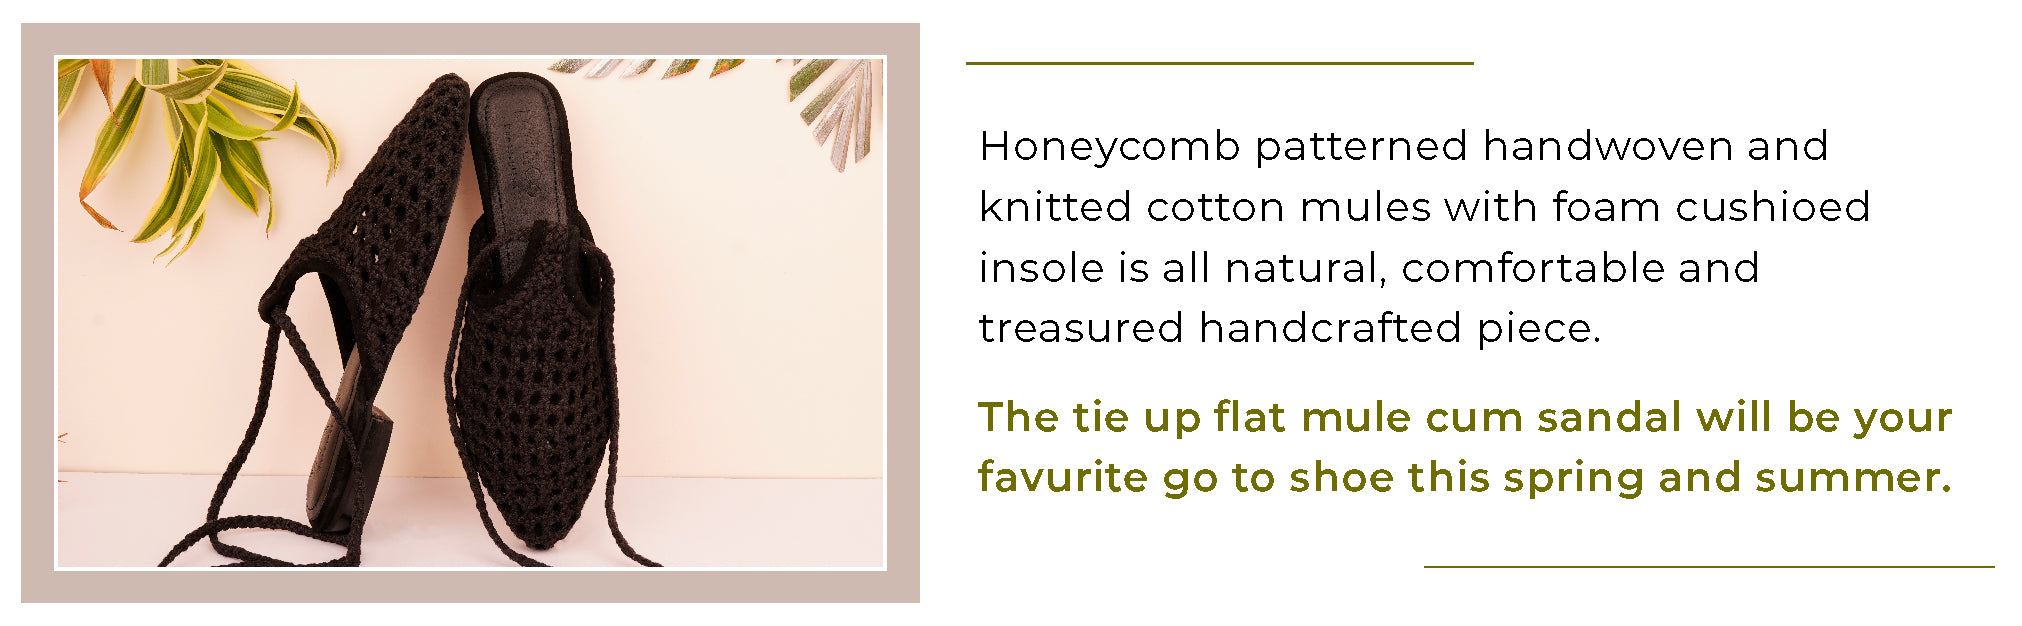 TUTSI Green Handwoven Honeycomb Tie Up Flat Mules